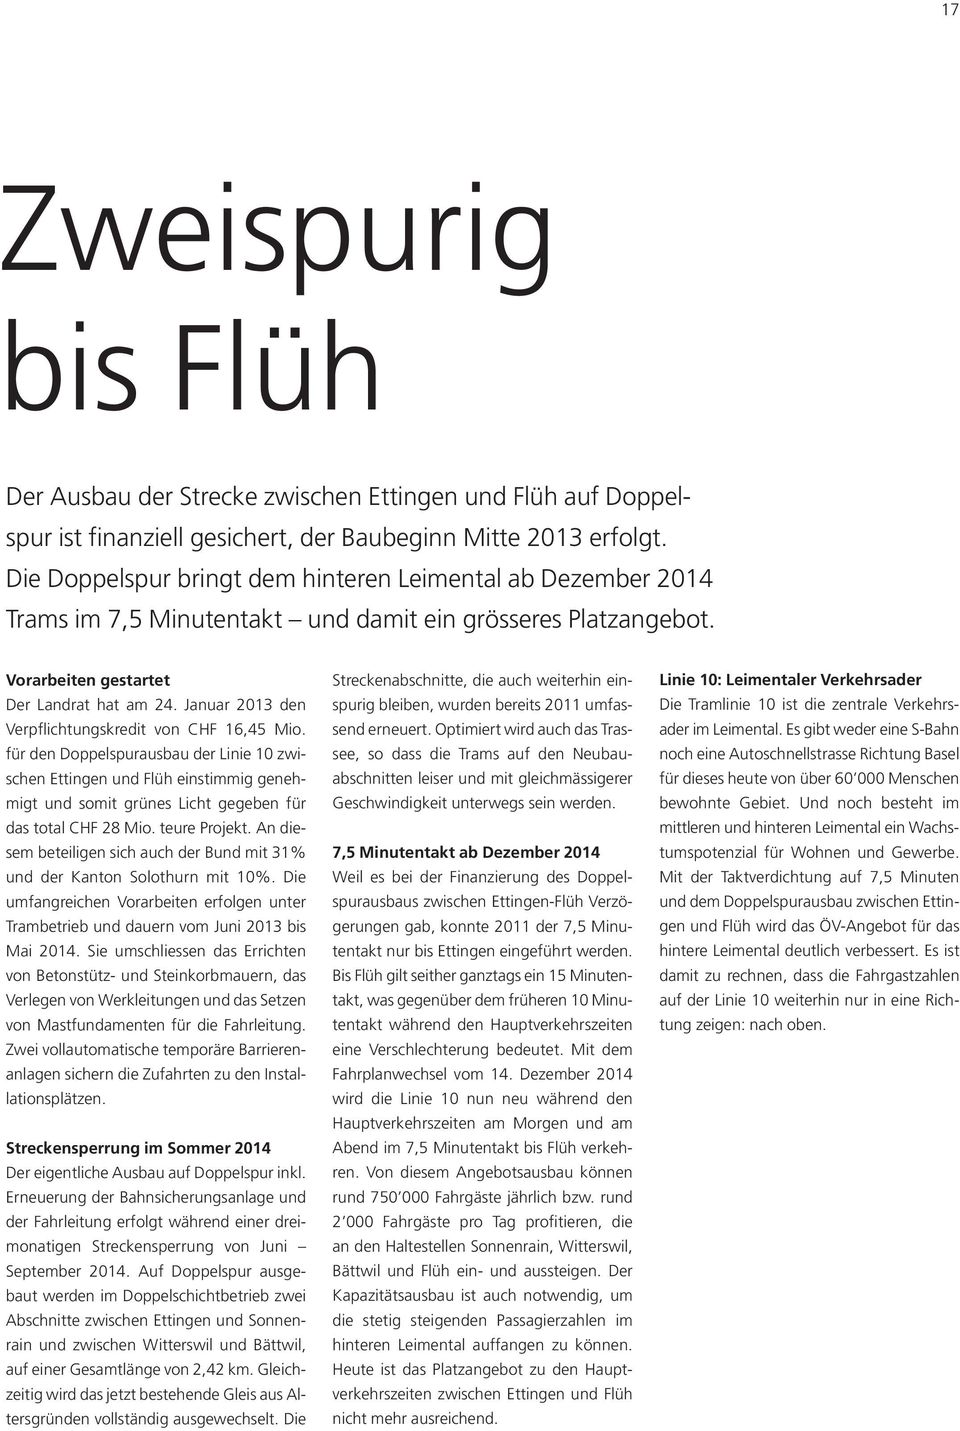 Januar 2013 den Verpflichtungskredit von CHF 16,45 Mio. für den Doppelspurausbau der Linie 10 zwischen Ettingen und Flüh einstimmig genehmigt und somit grünes Licht gegeben für das total CHF 28 Mio.